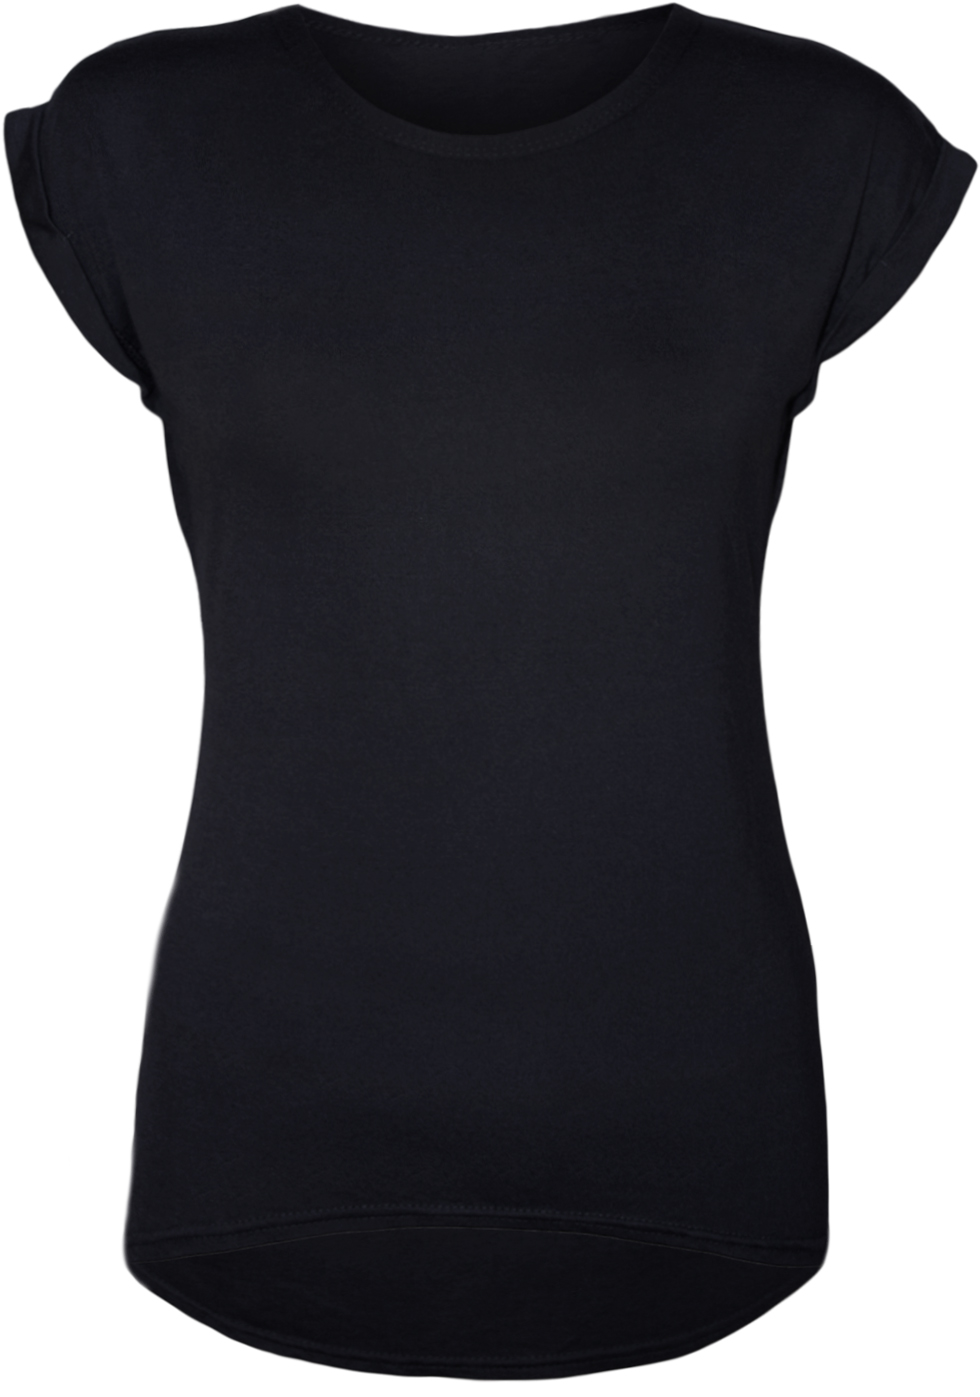 Best Photos of Black T-Shirt Template - Black T-Shirt Clip Art ...